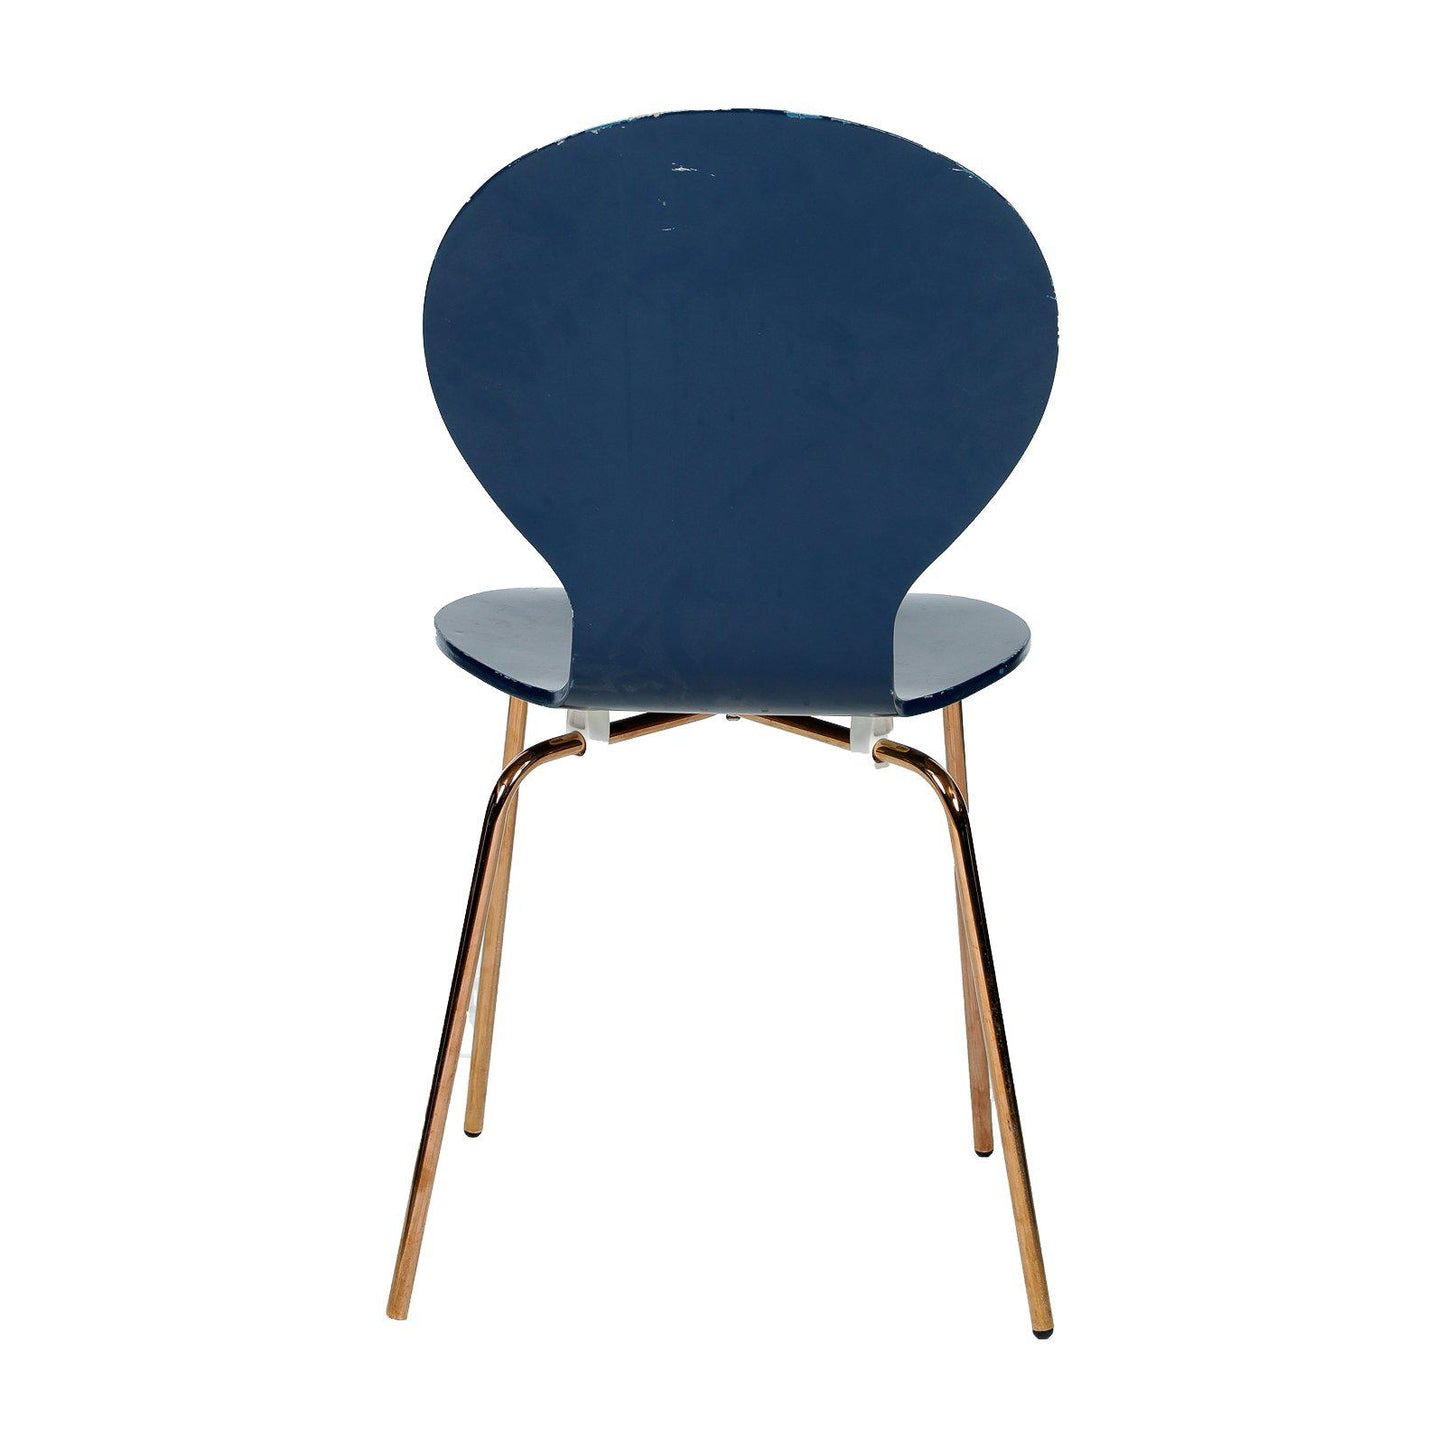 Chaise de réunion design occasion - Bleu marine - 44 x 37 x 87 cm-Bluedigo